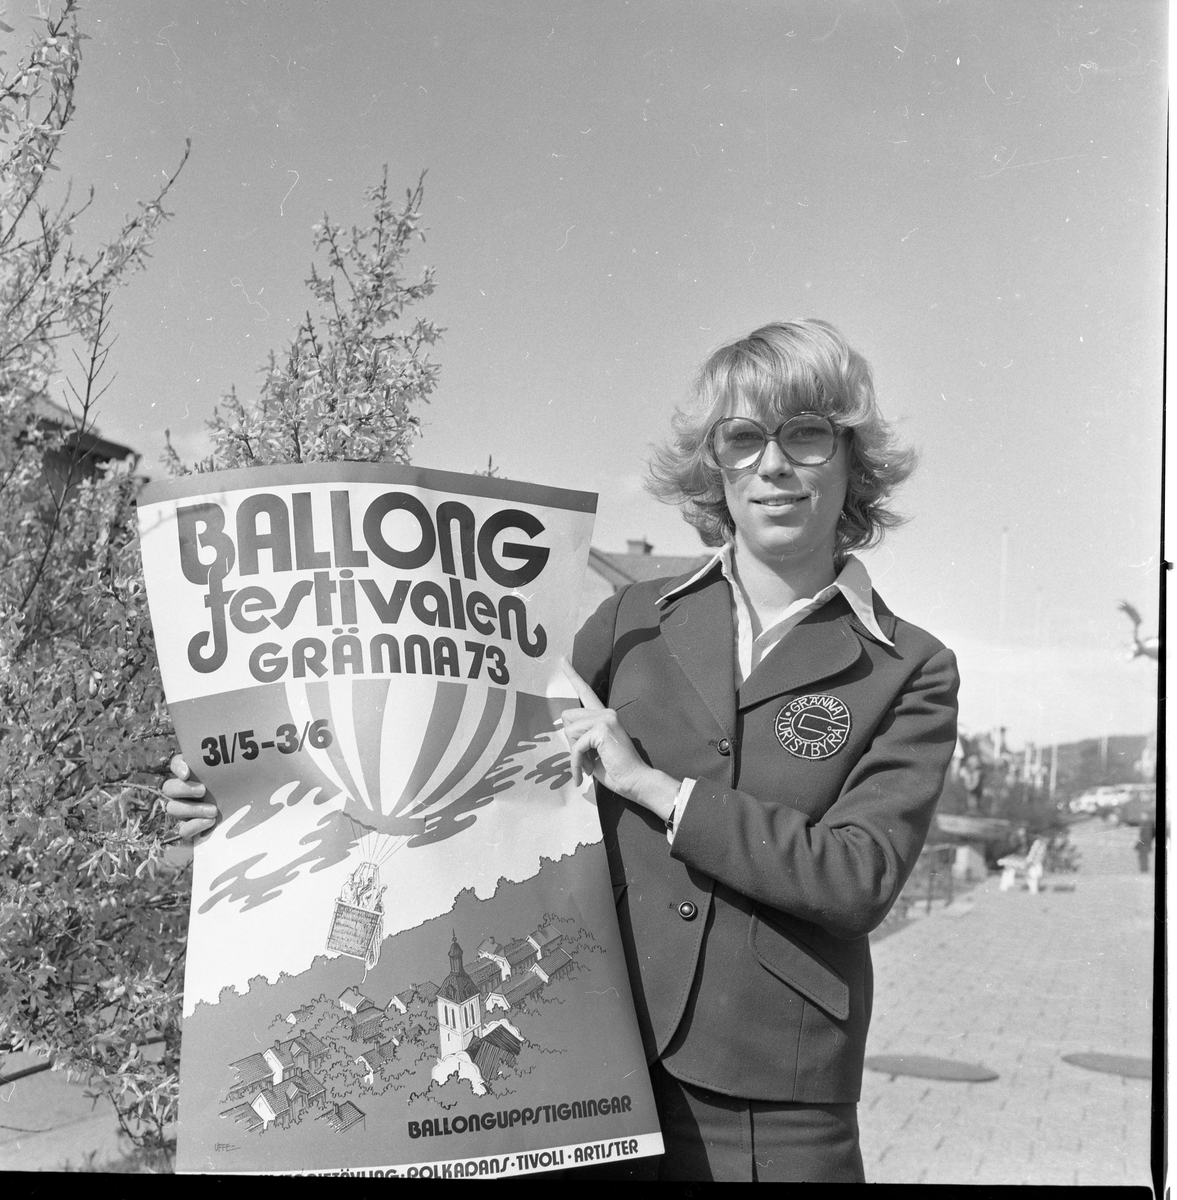 En ung kvinna med glasögon håller upp en affisch om "Ballongfestivalen i Gränna 73".